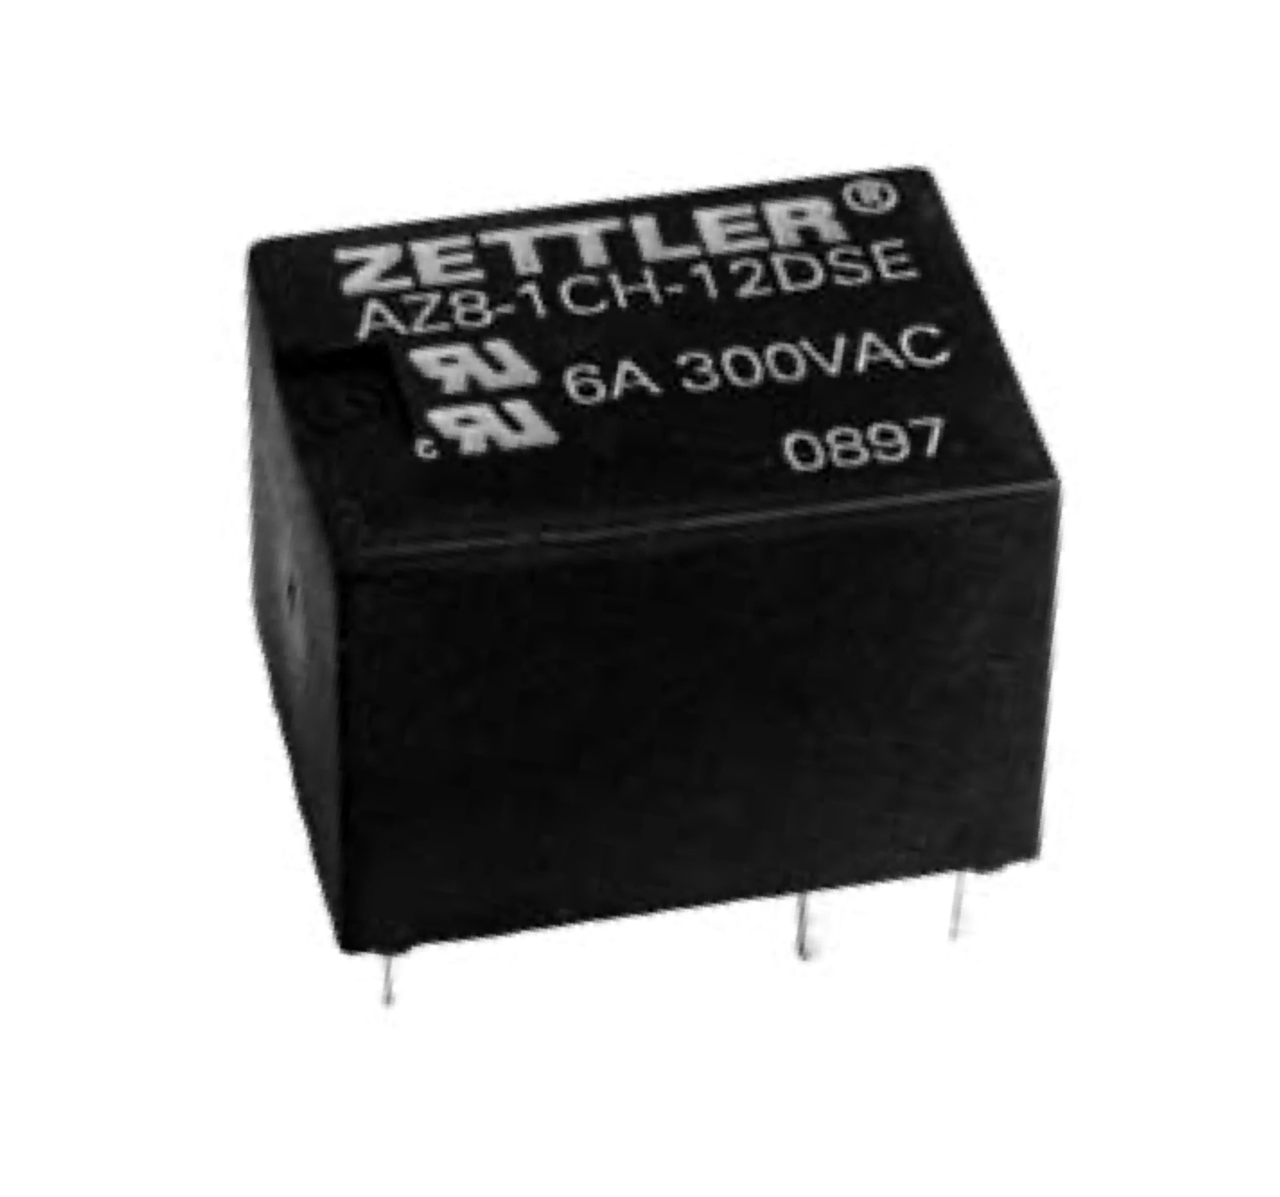 American Zettler AZ8-1CH-12DE Power Relay